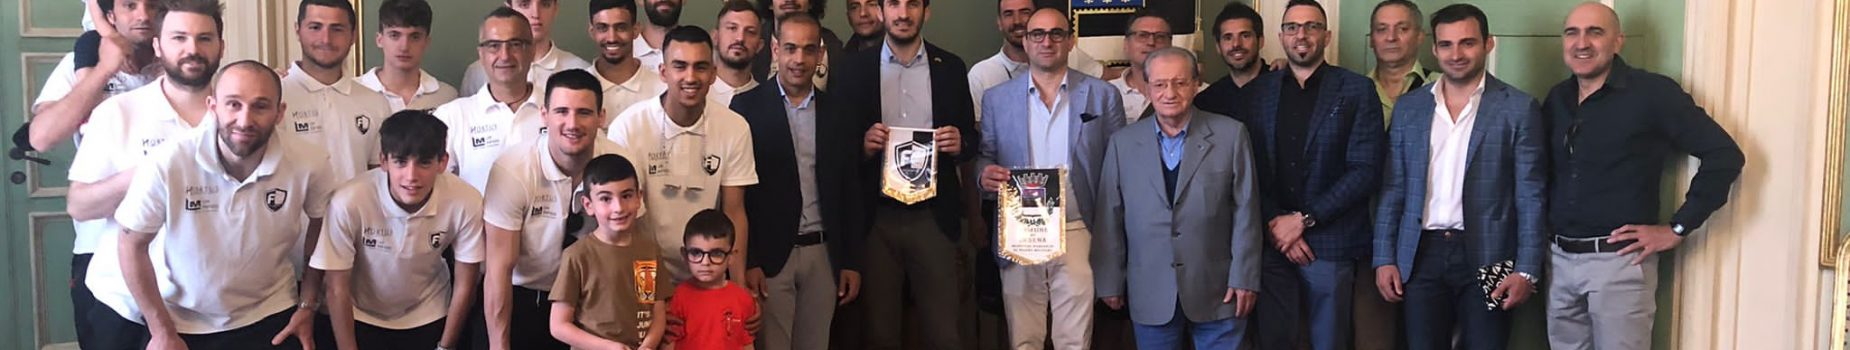 La Futsal Cesena ricevuta in Comune dal sindaco